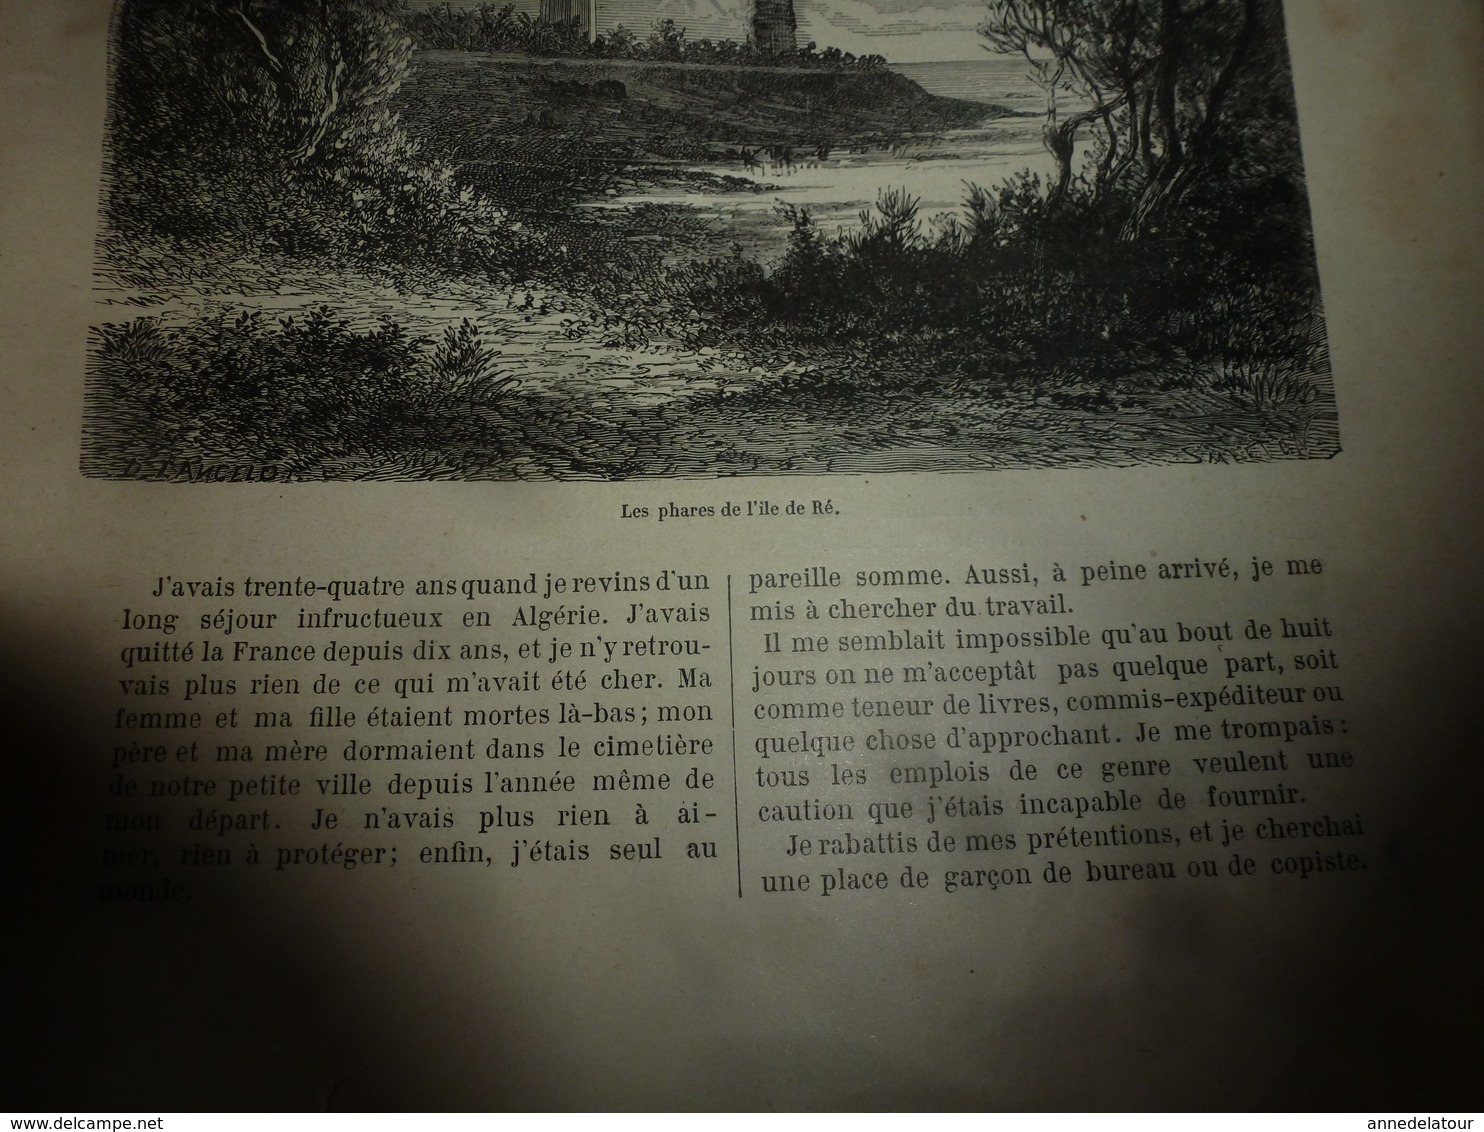 1890 Le Petit Français illustré:A bord de LA BRETAGNE avec Kermadec;Charles-Quint le français;Phare de l'ïle de Ré; etc